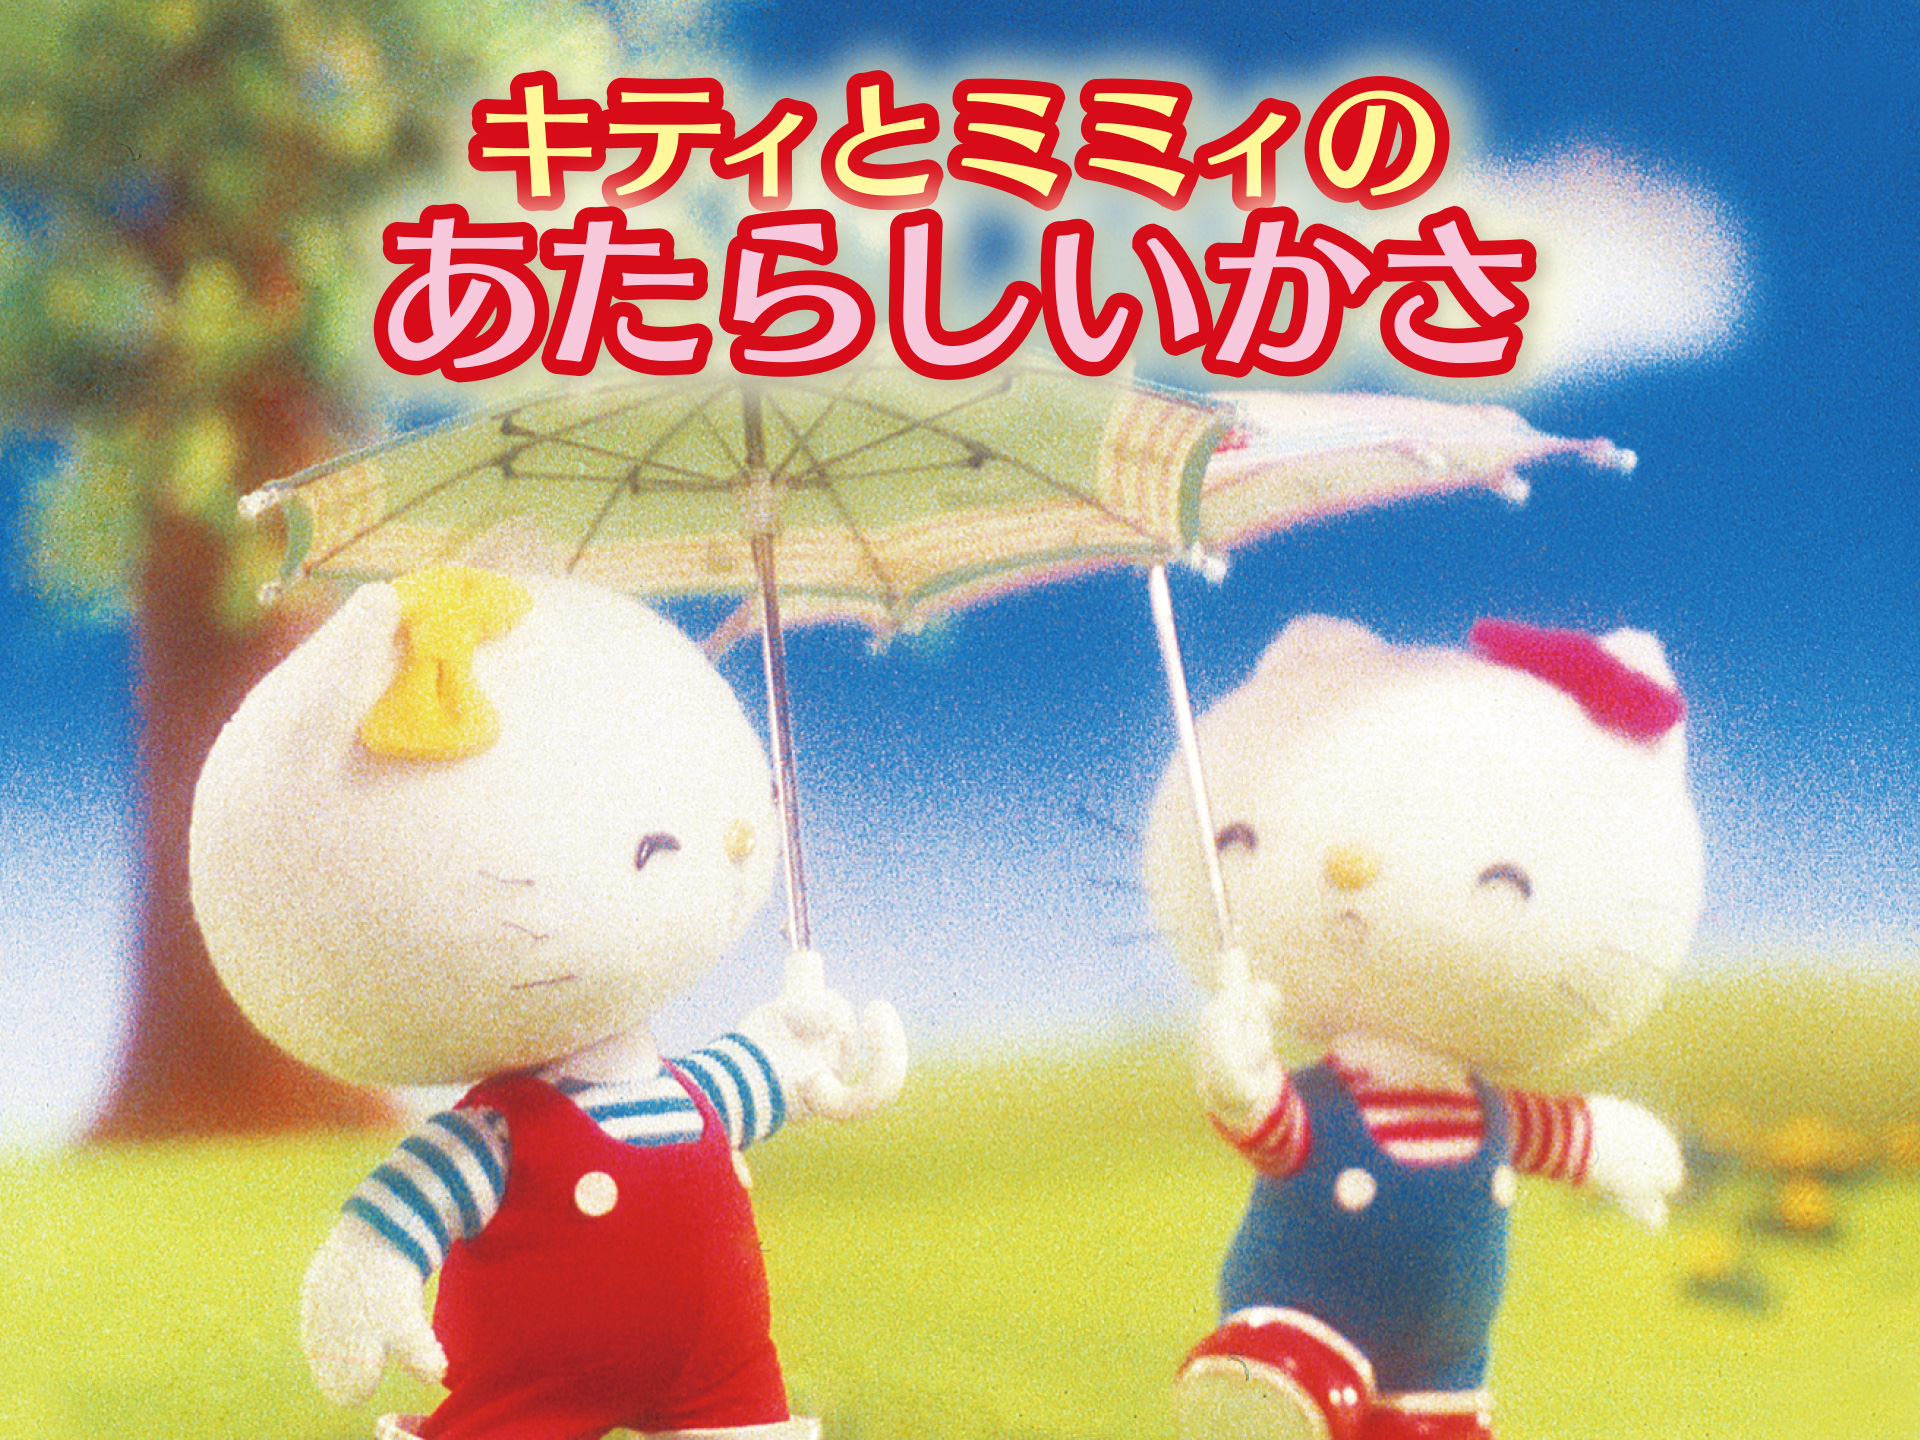 アニメ キティとミミィのあたらしいかさ の動画 初月無料 動画配信サービスのビデオマーケット